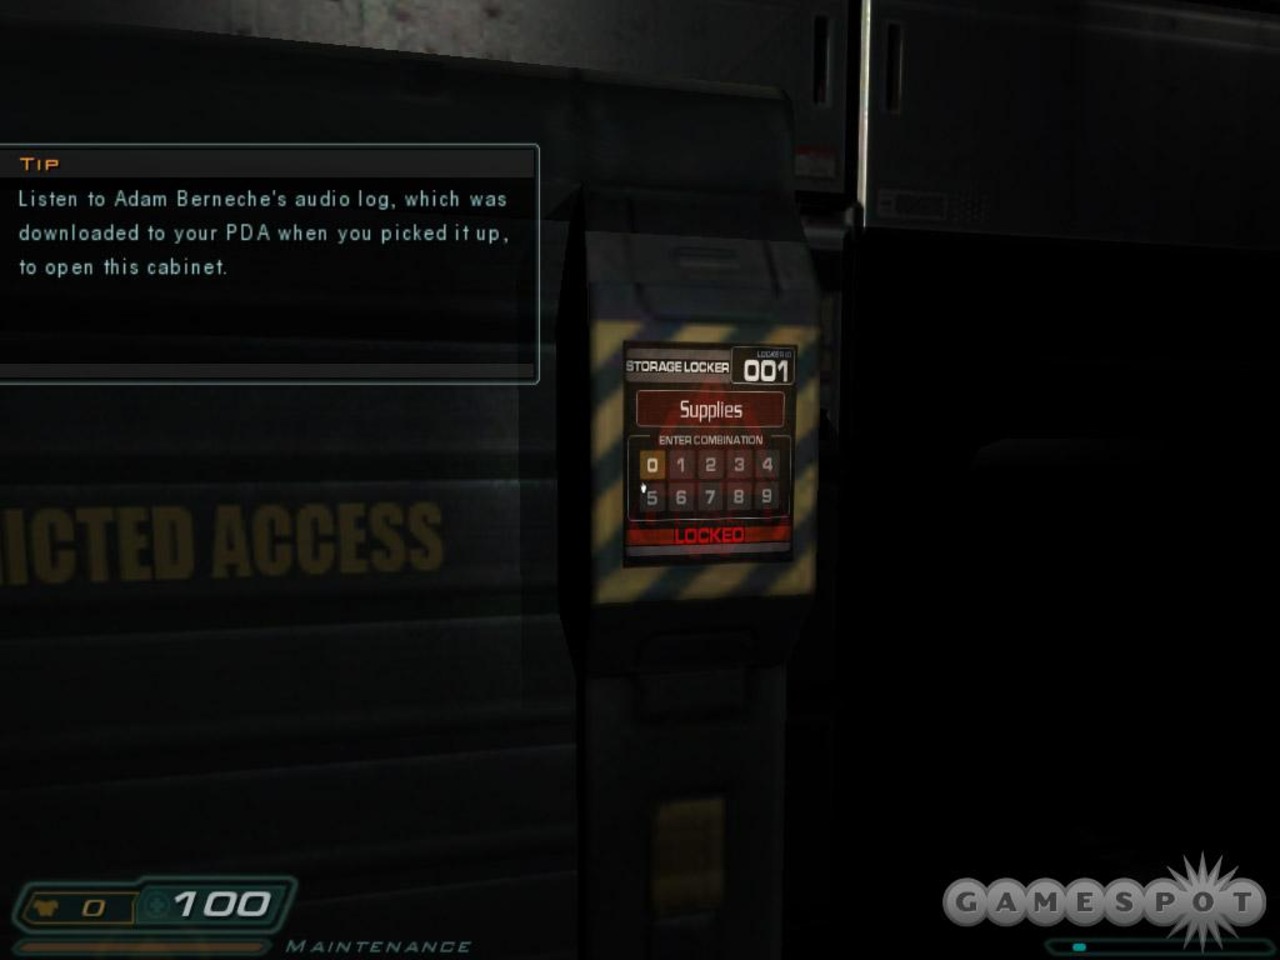 Код игры doom. Doom 3 складской шкаф 023. Пароли от ящиков в игре Doom 3. Коды от шкафчиков дум 3. Складской шкаф 003 дум 3.